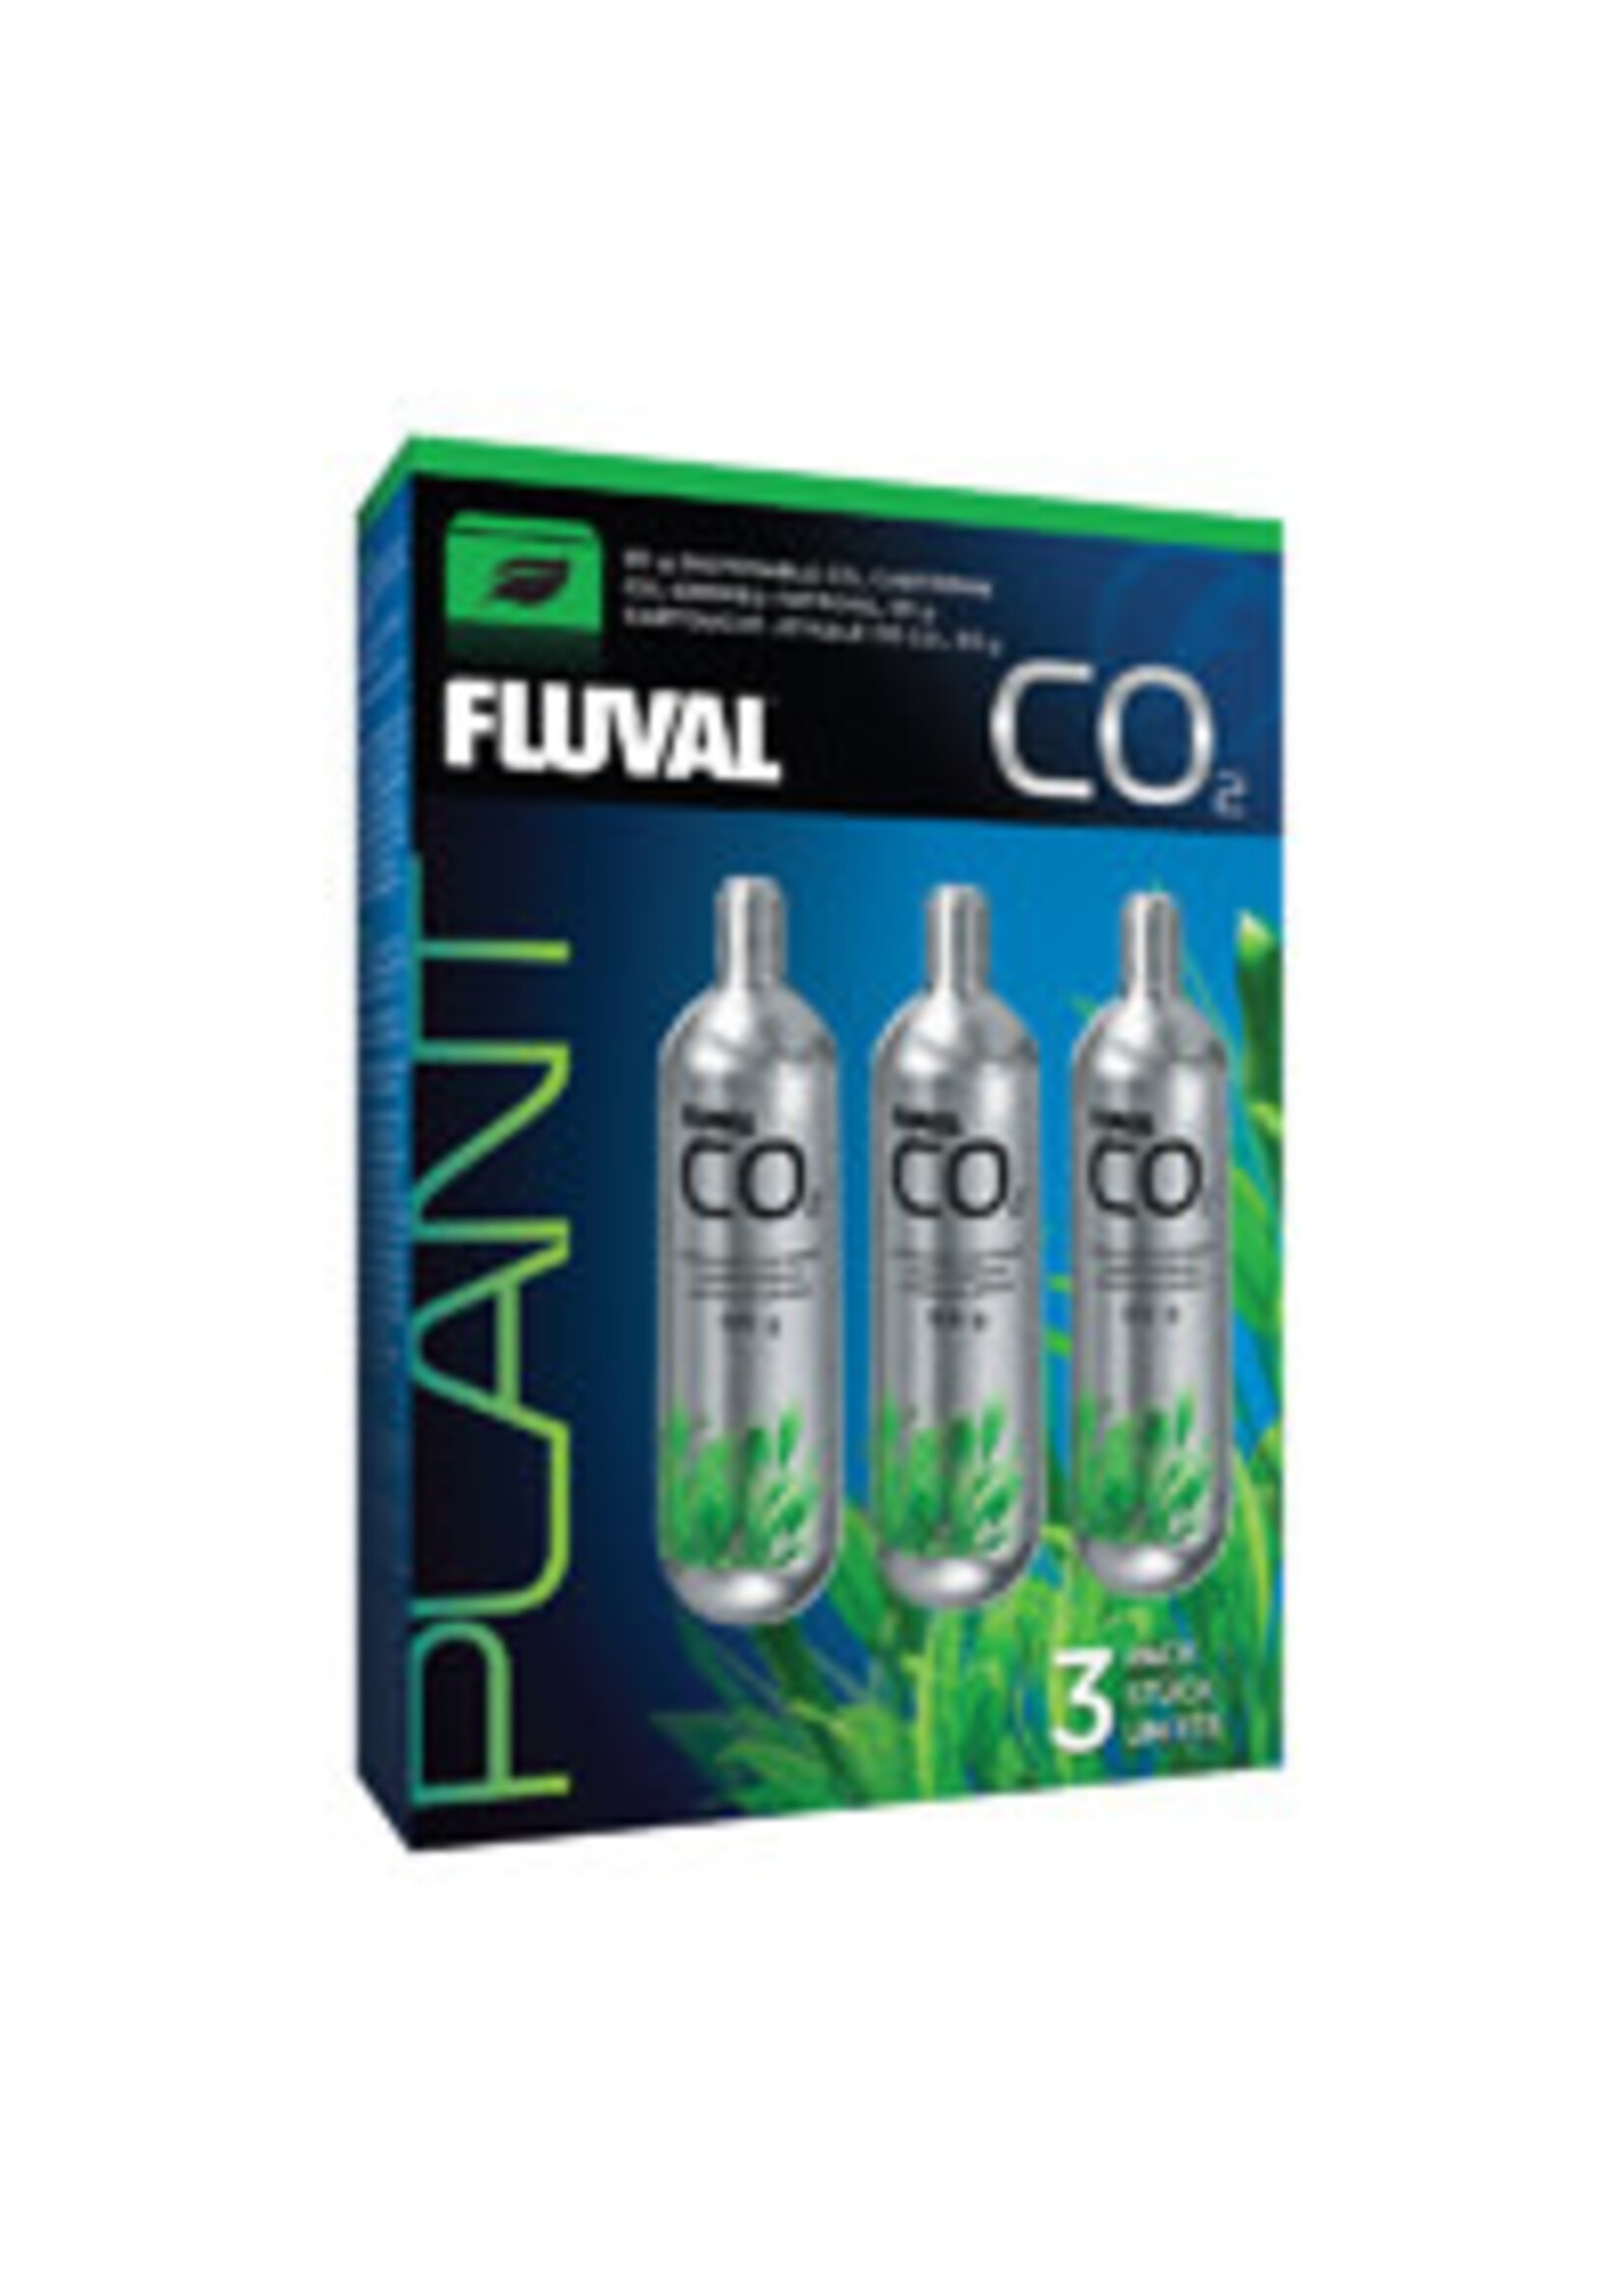 Fluval 95 G CO2 CARTRIDGE 3PK